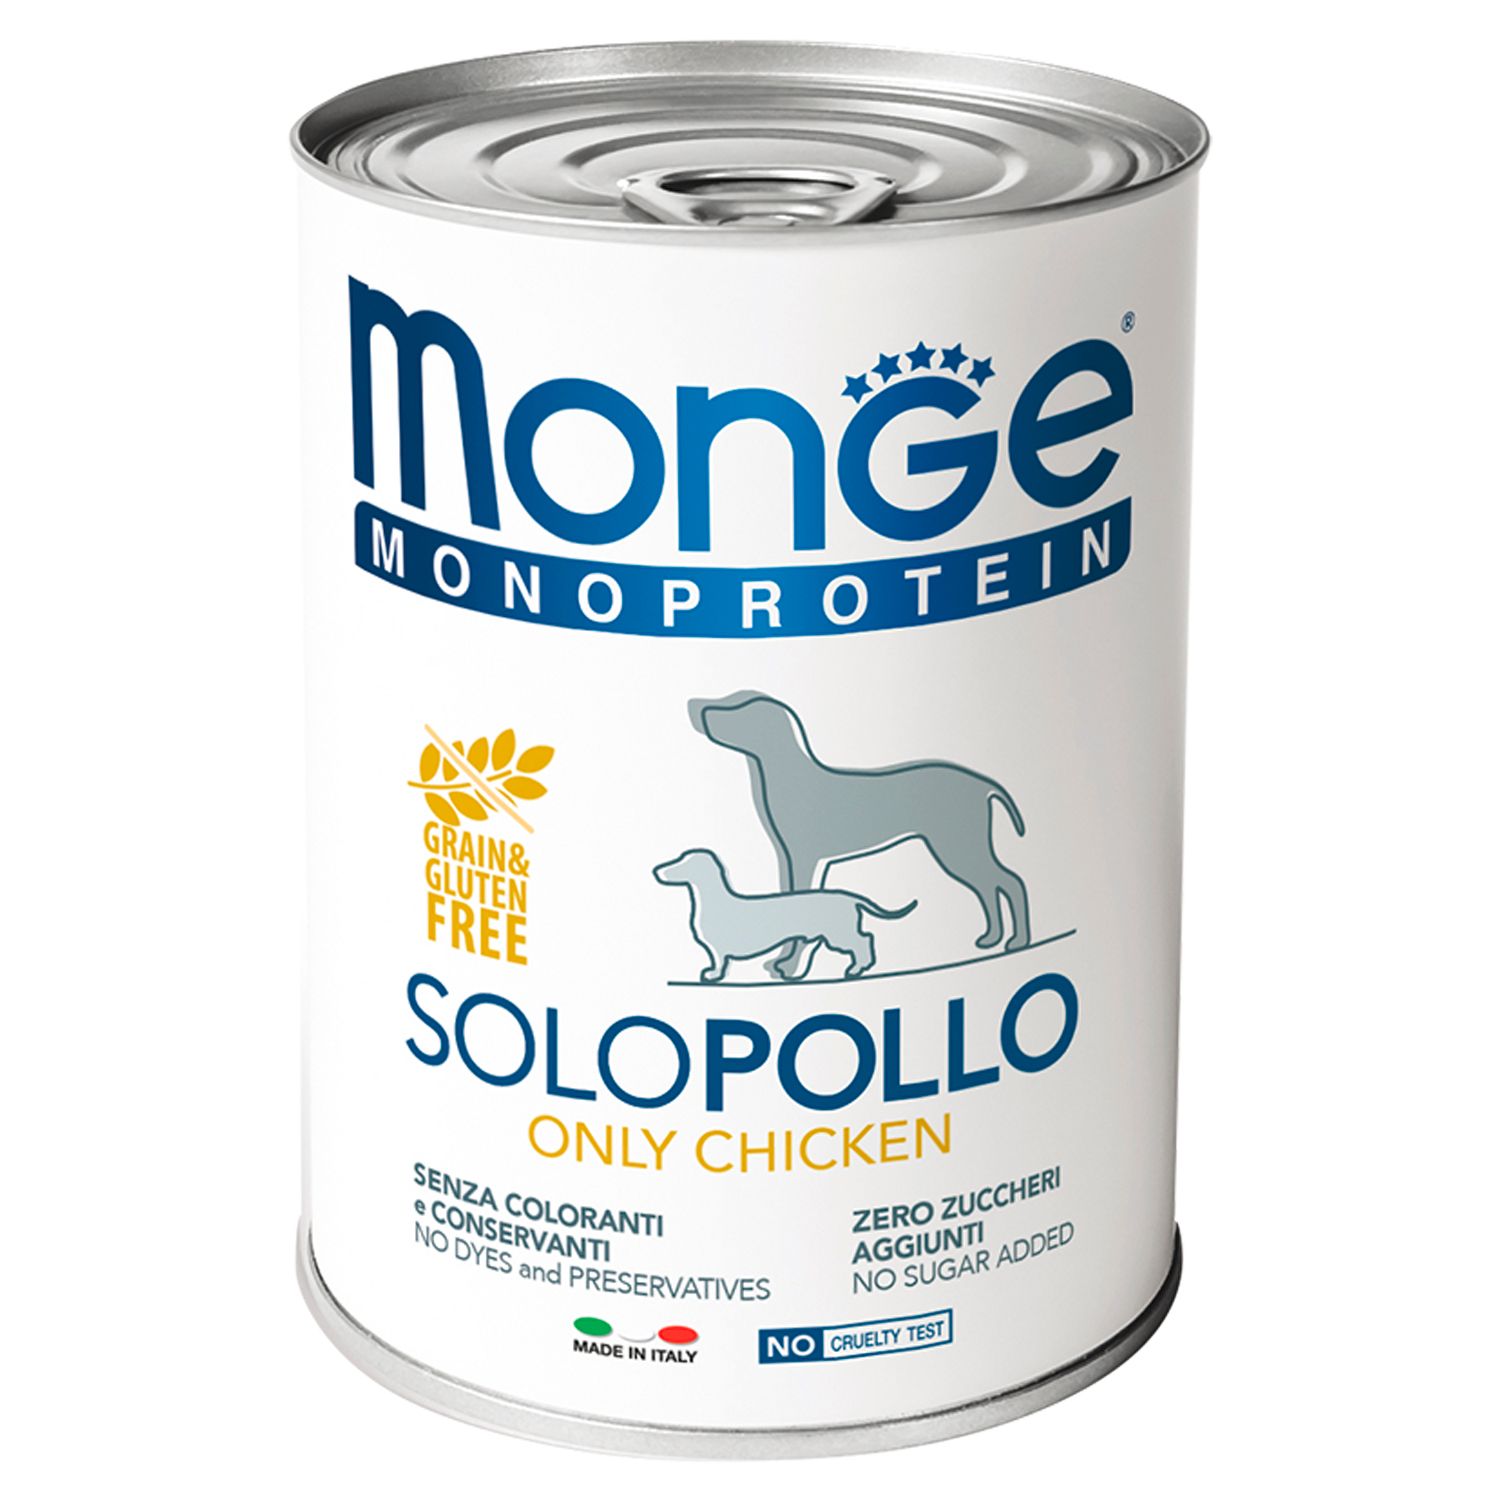 Monge Monoprotein Solo Курица паштет консервы для собак 2